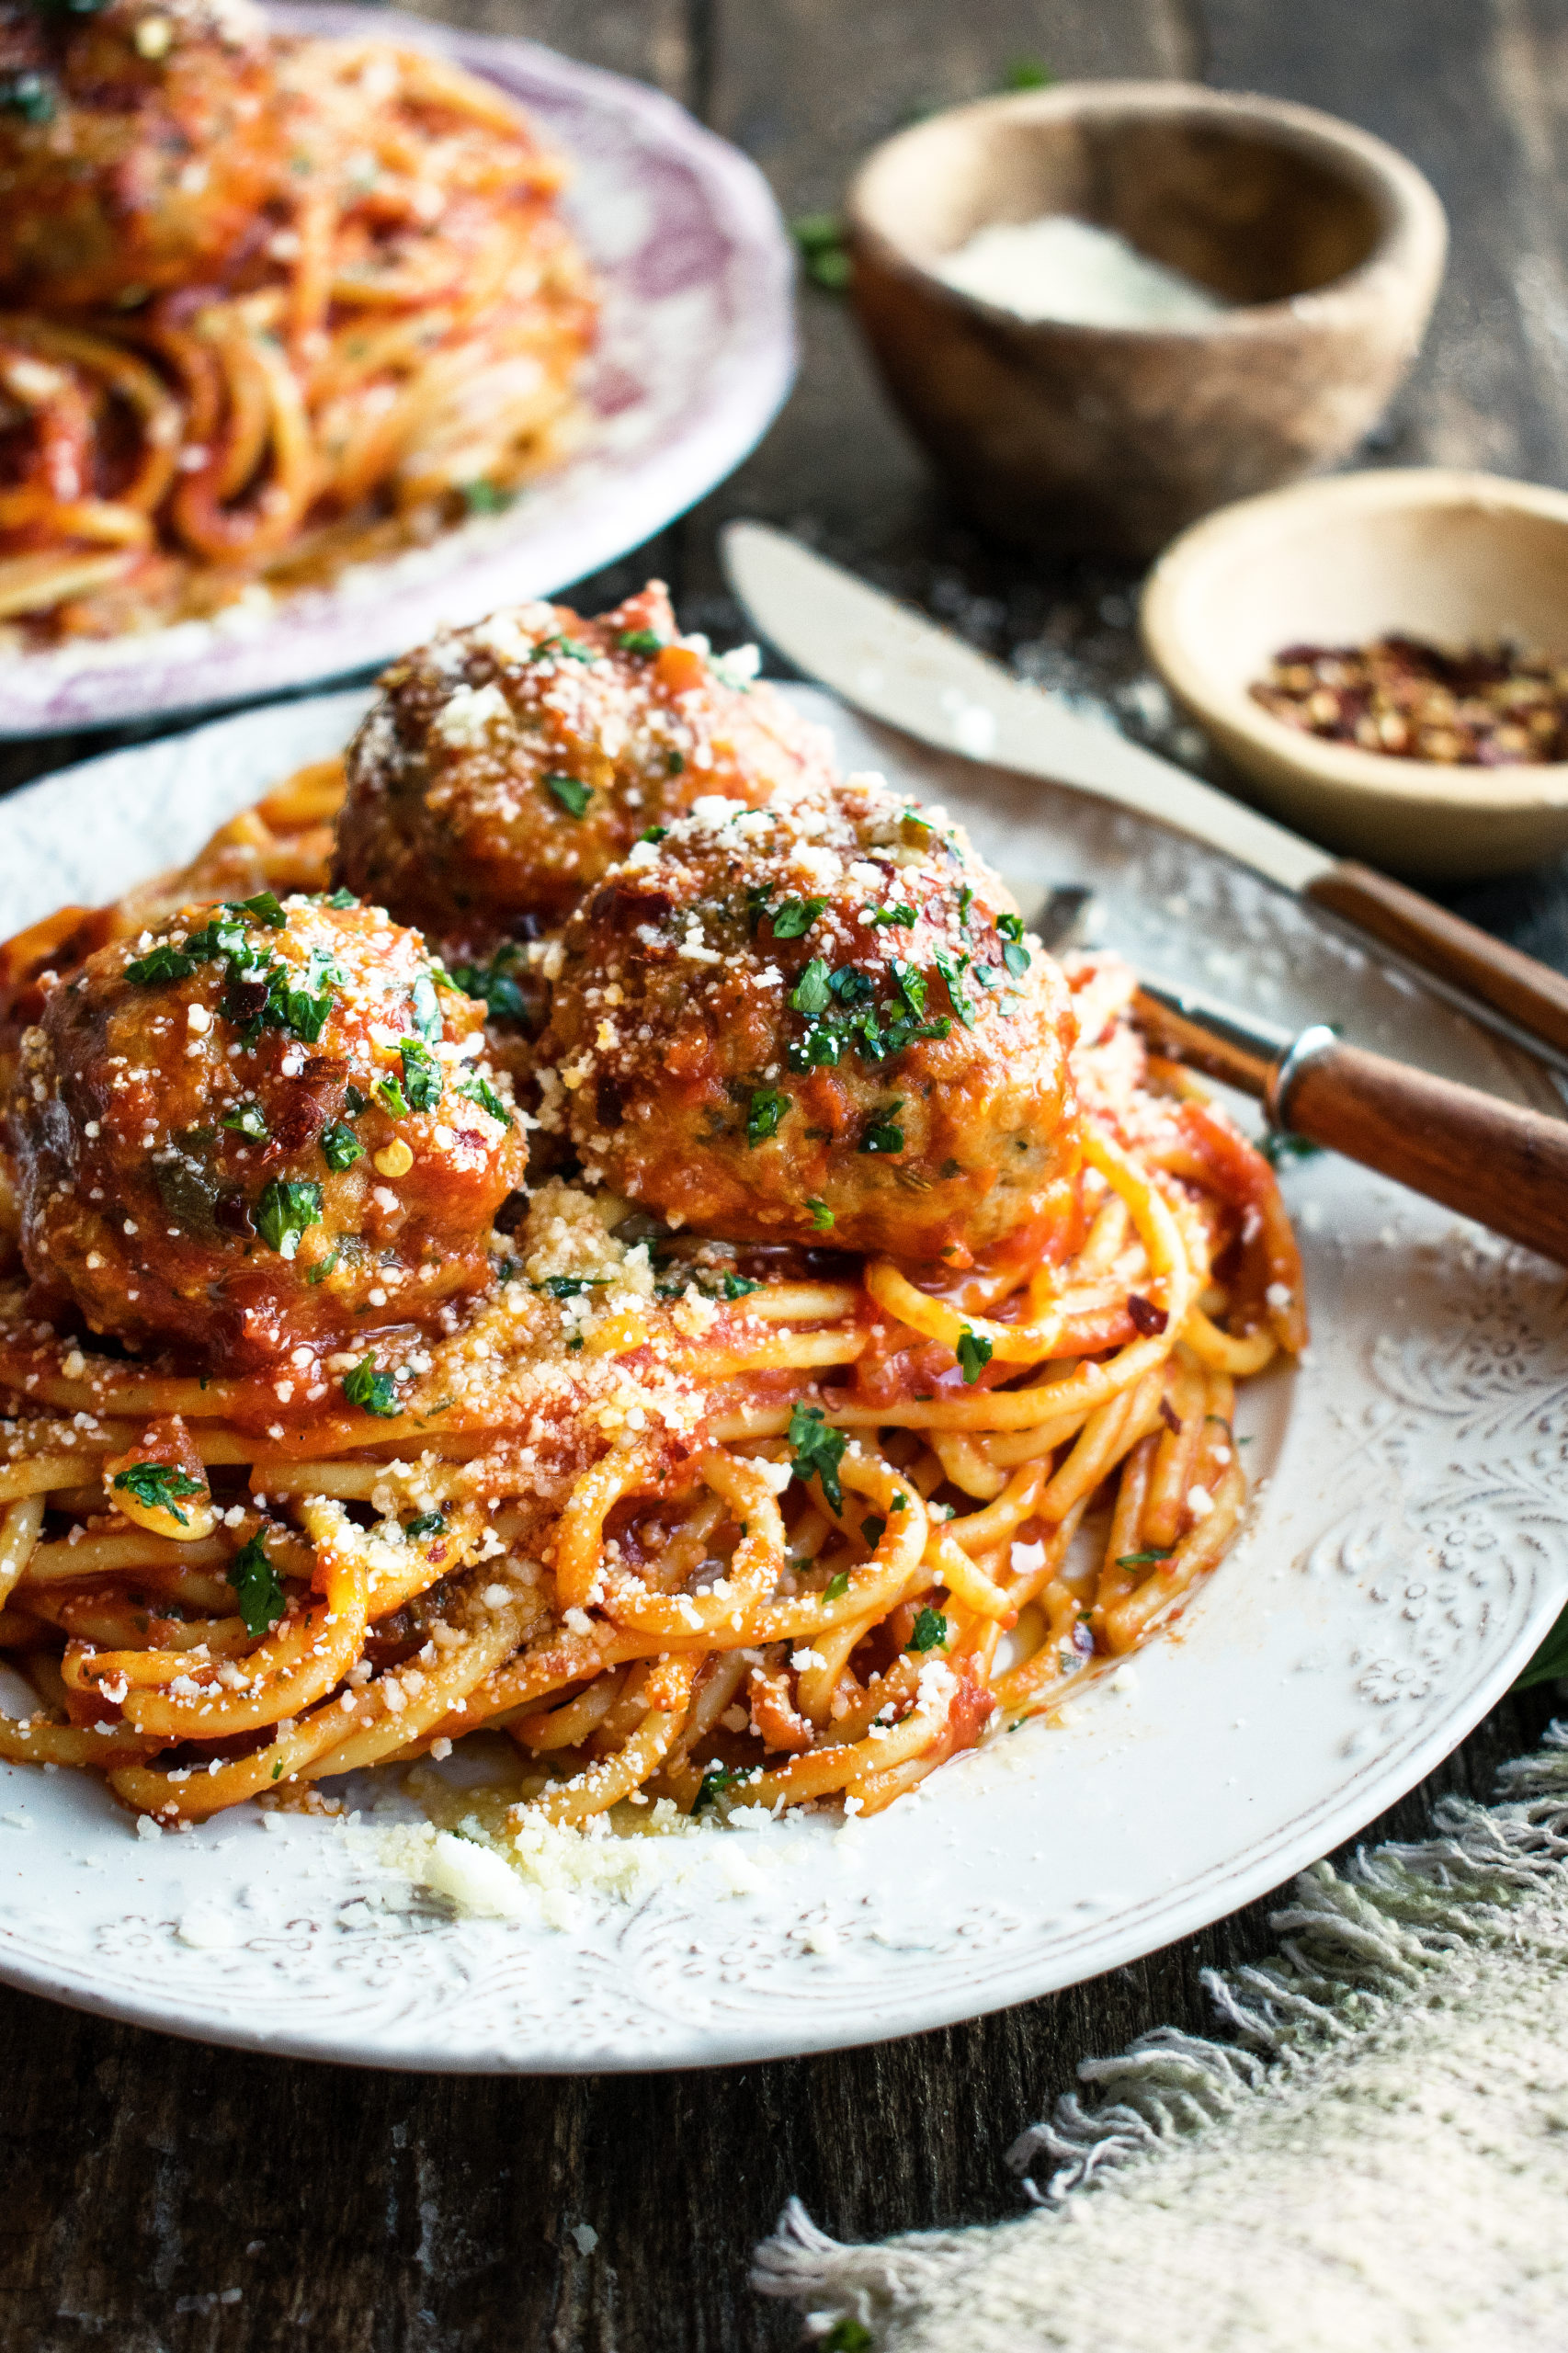 Spaghetti & Meatballs with Spicy Tomato Sauce - The Original Dish